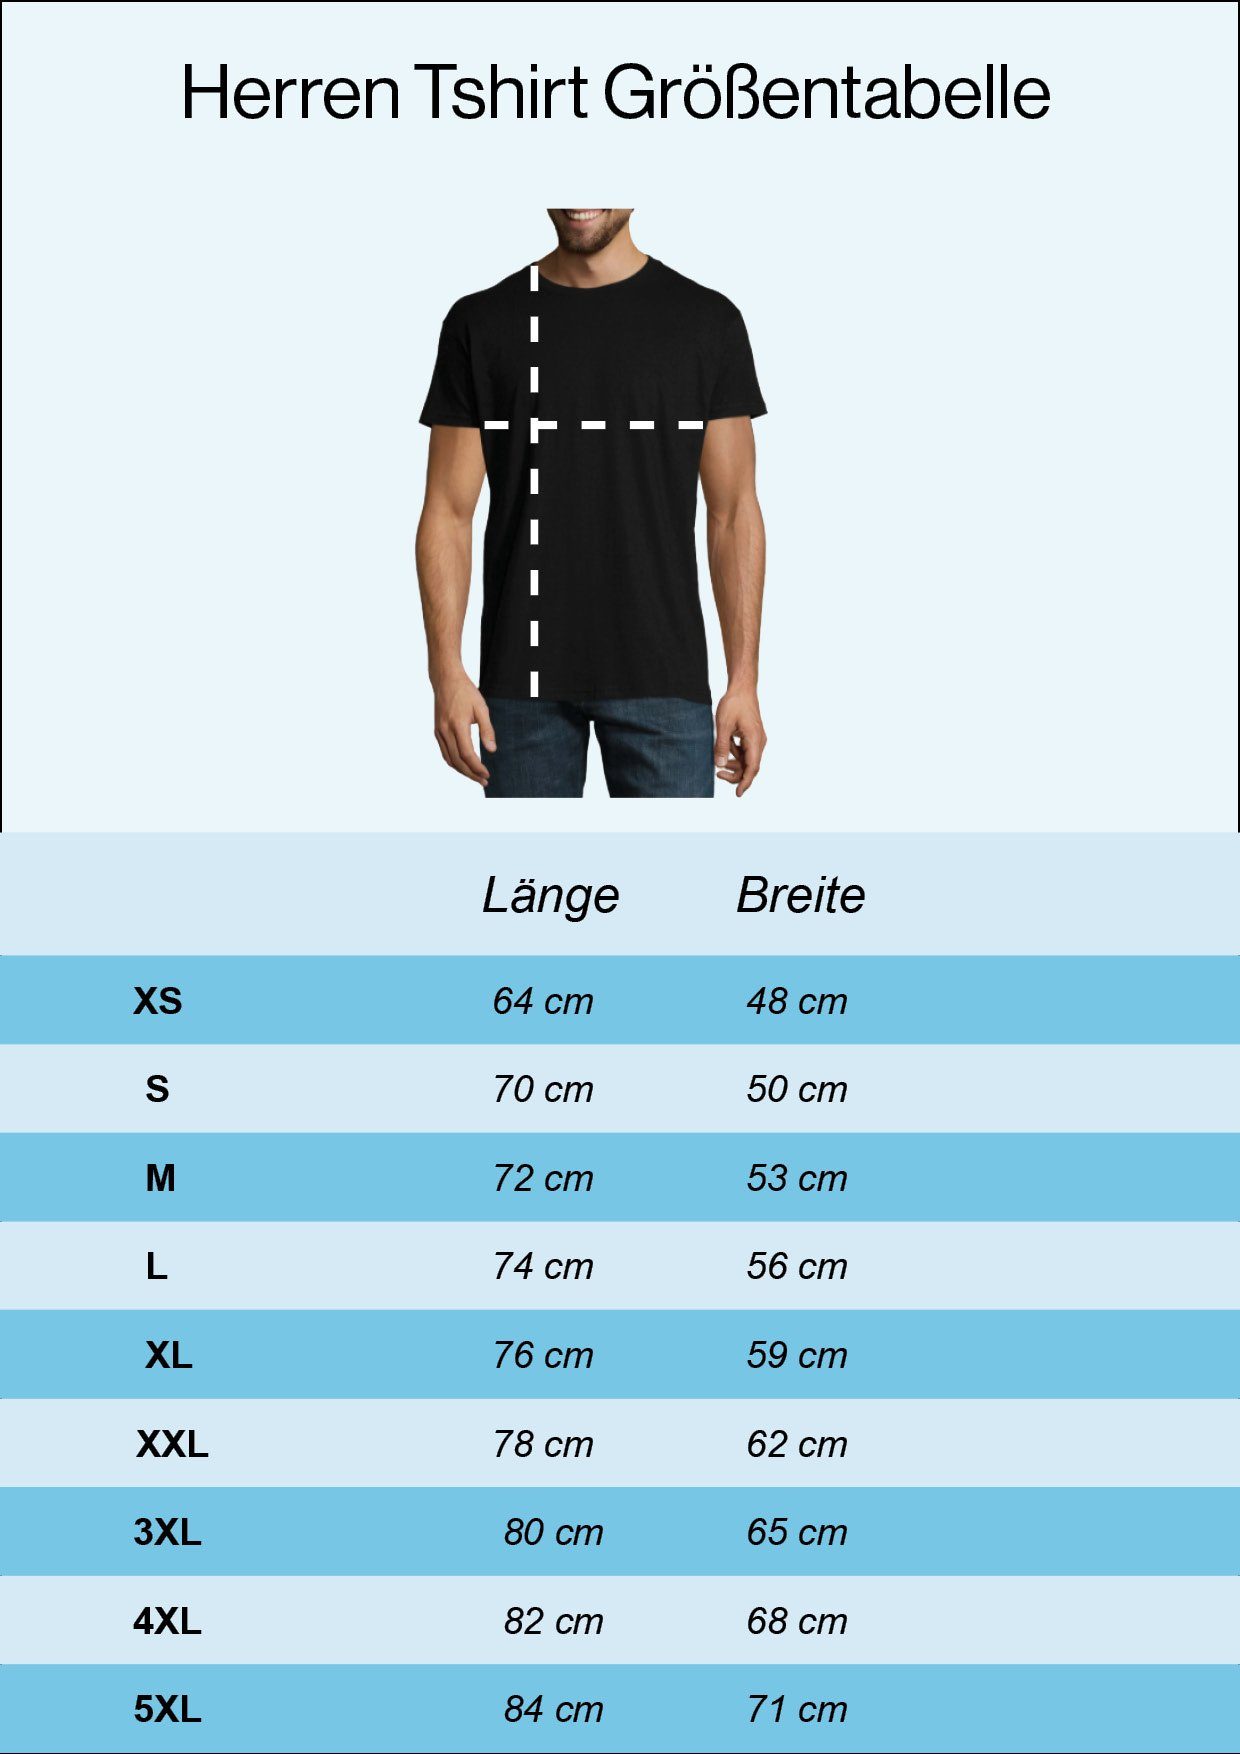 Herren Shirts Youth Designz T-Shirt Club Der Alten Säcke Herren Shirt mit lustigem Biker Frontprint